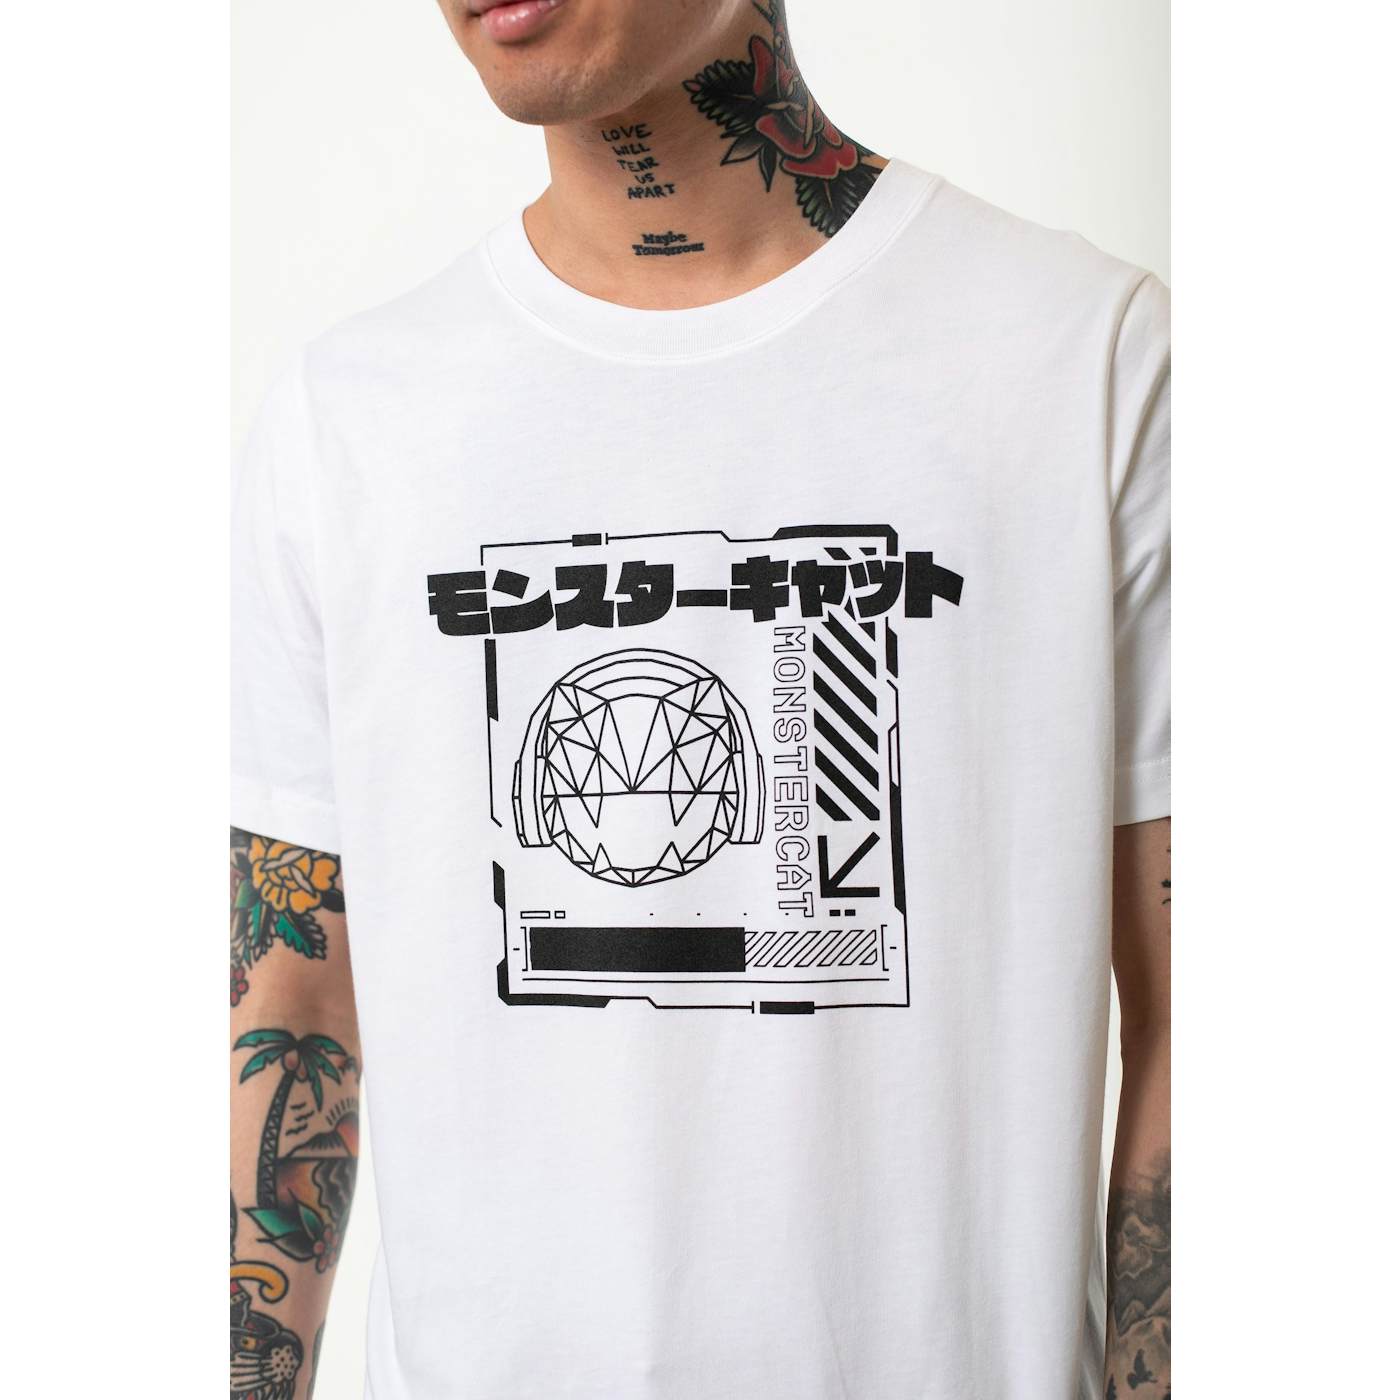 Monstercat Ctrl+N - White Short Sleeve T-Shirt